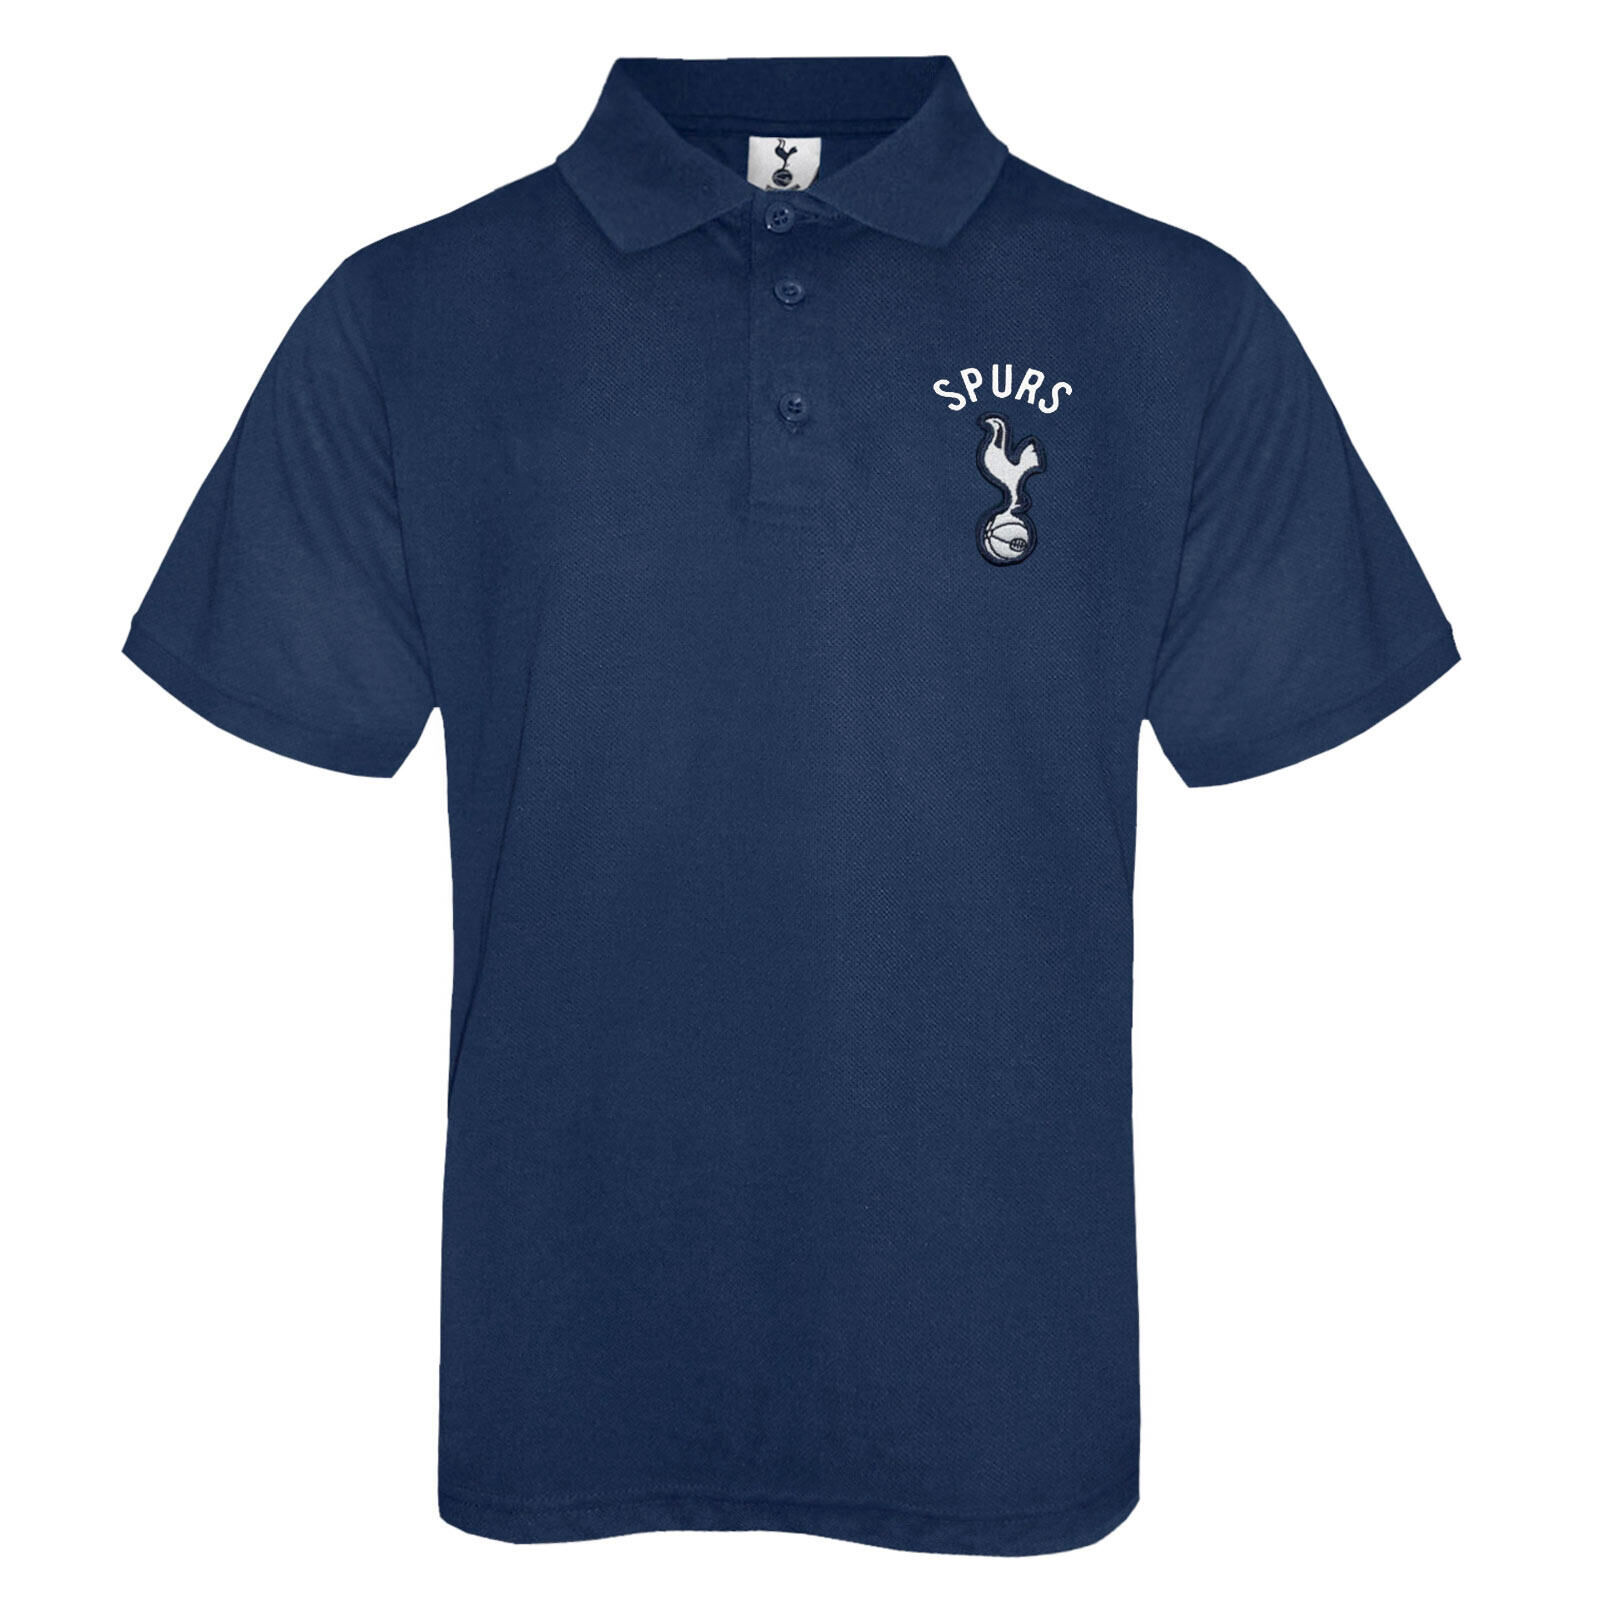 TOTTENHAM HOTSPUR Tottenham Hotspur Boys Polo Shirt Crest Kids OFFICIAL Football Gift